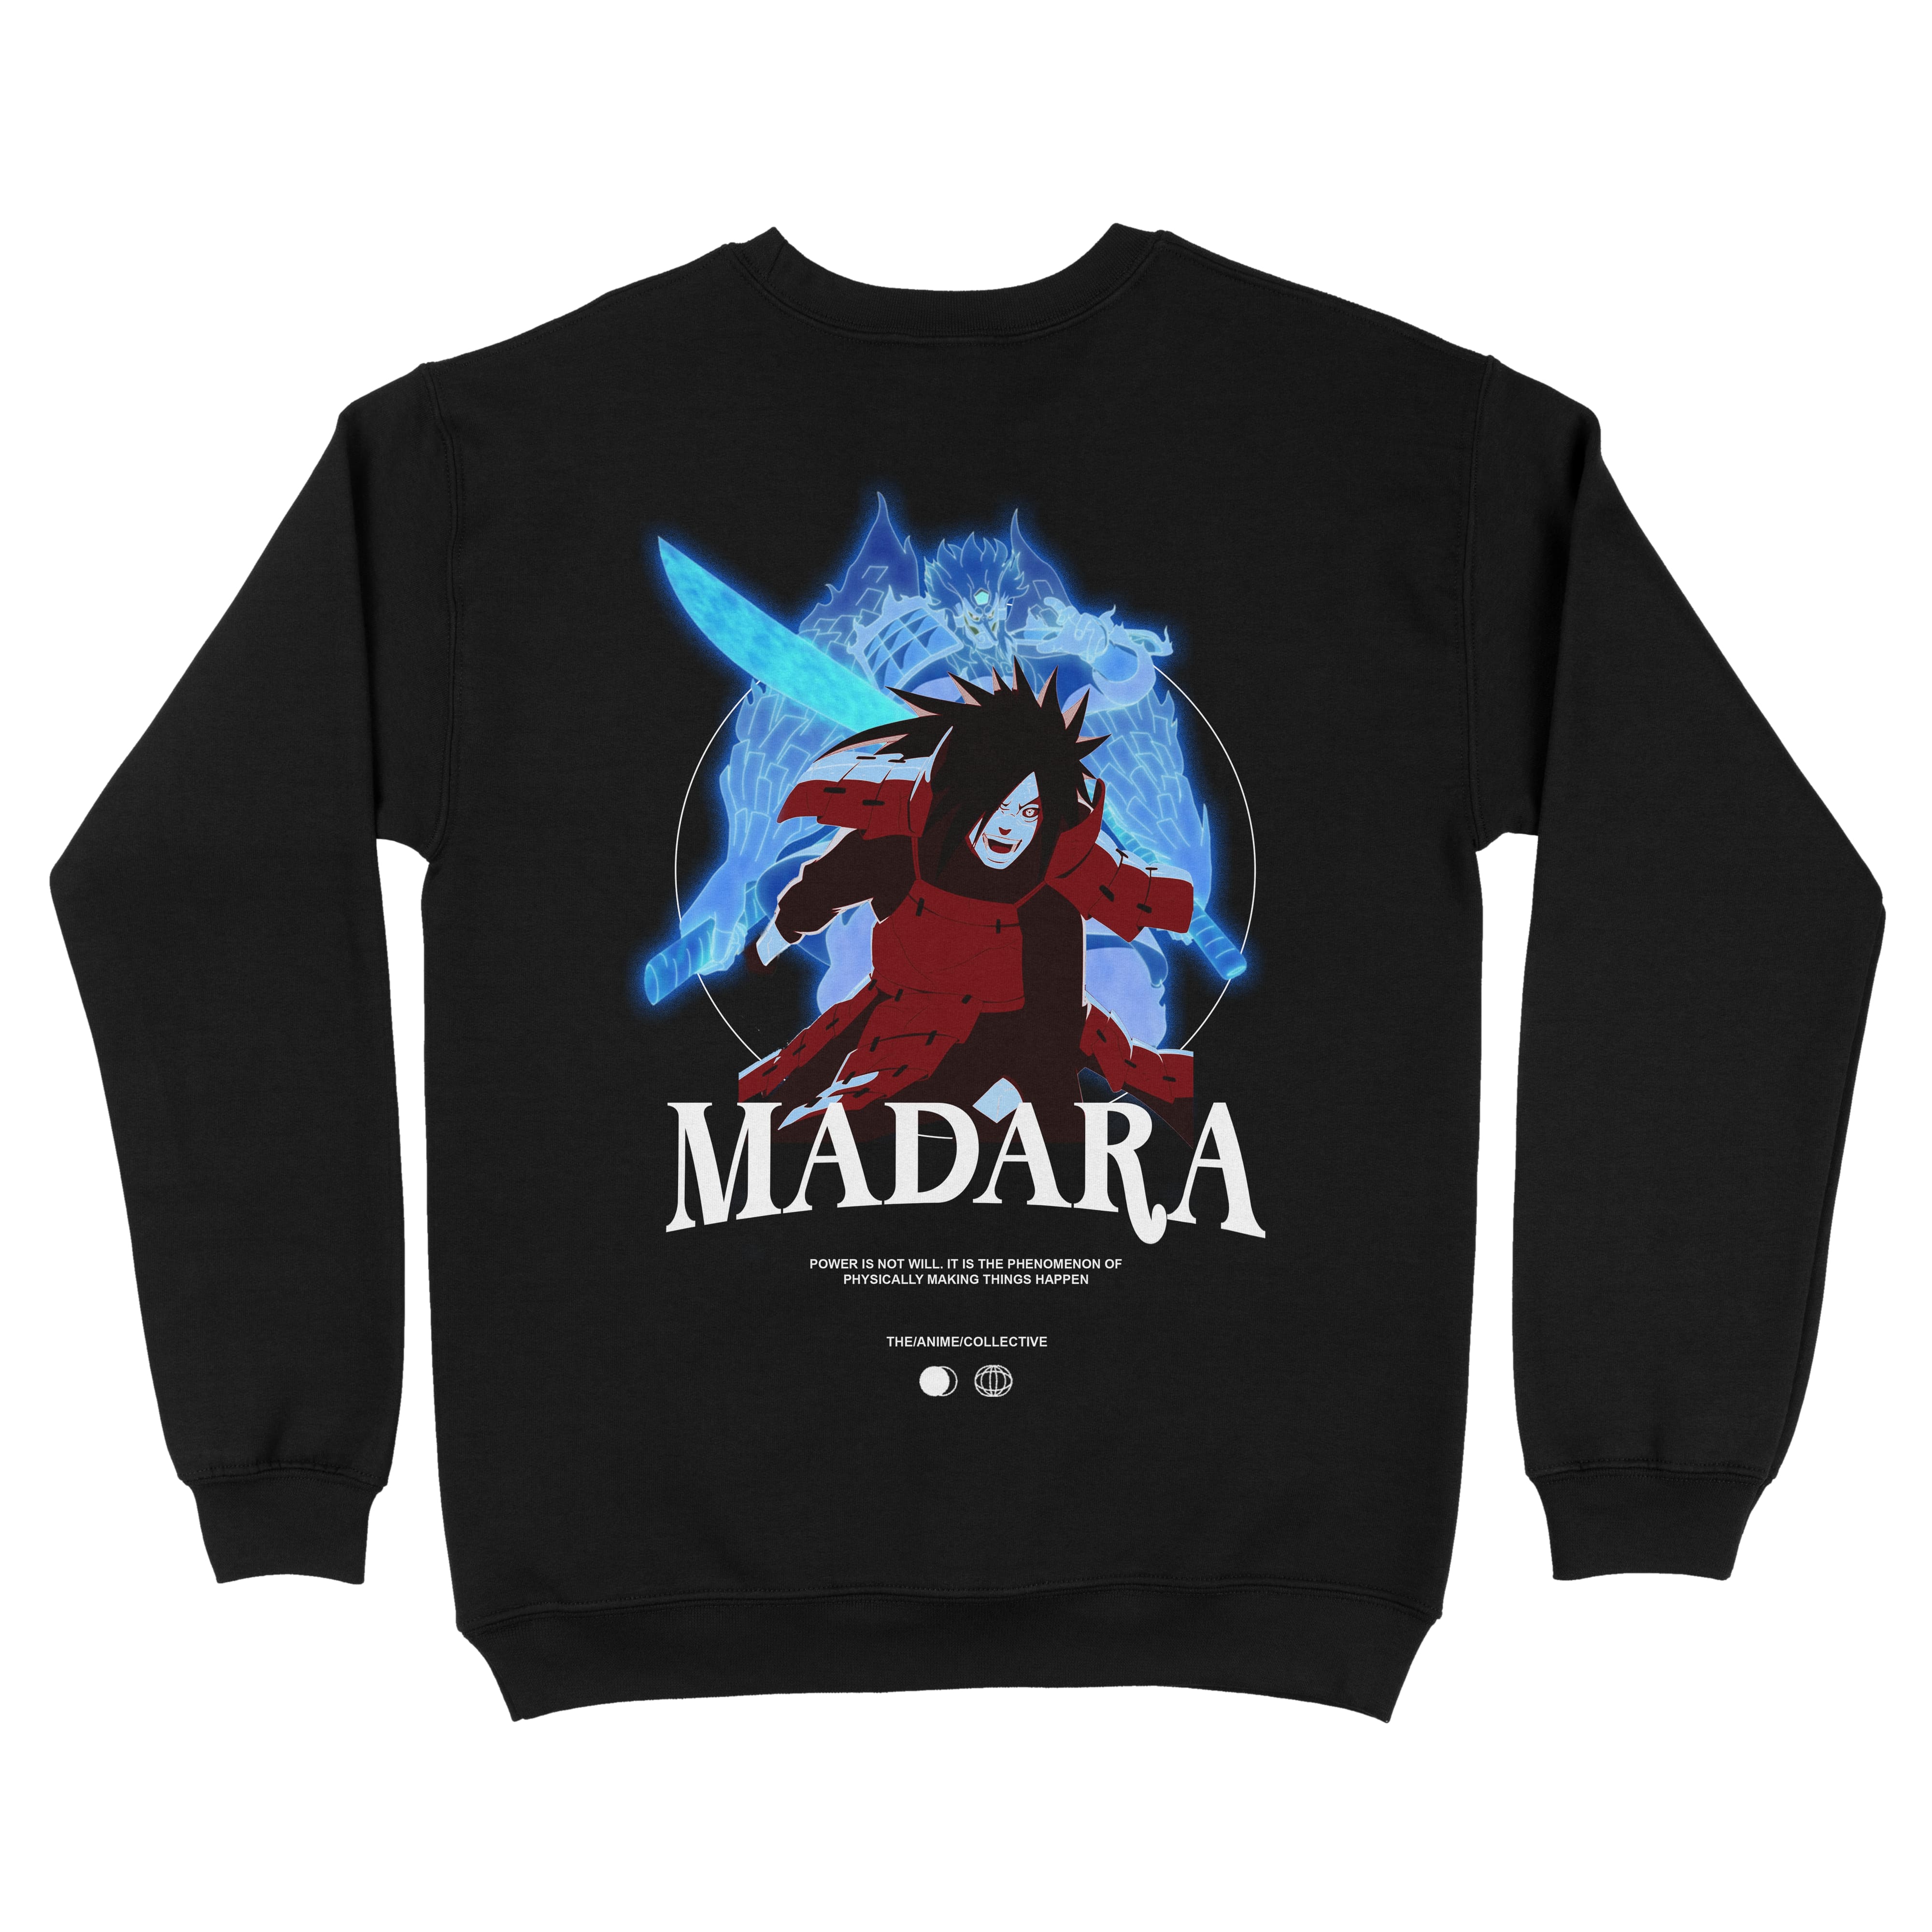 Uchiha Madara "Power" Sweatshirt | Naruto Shippuden